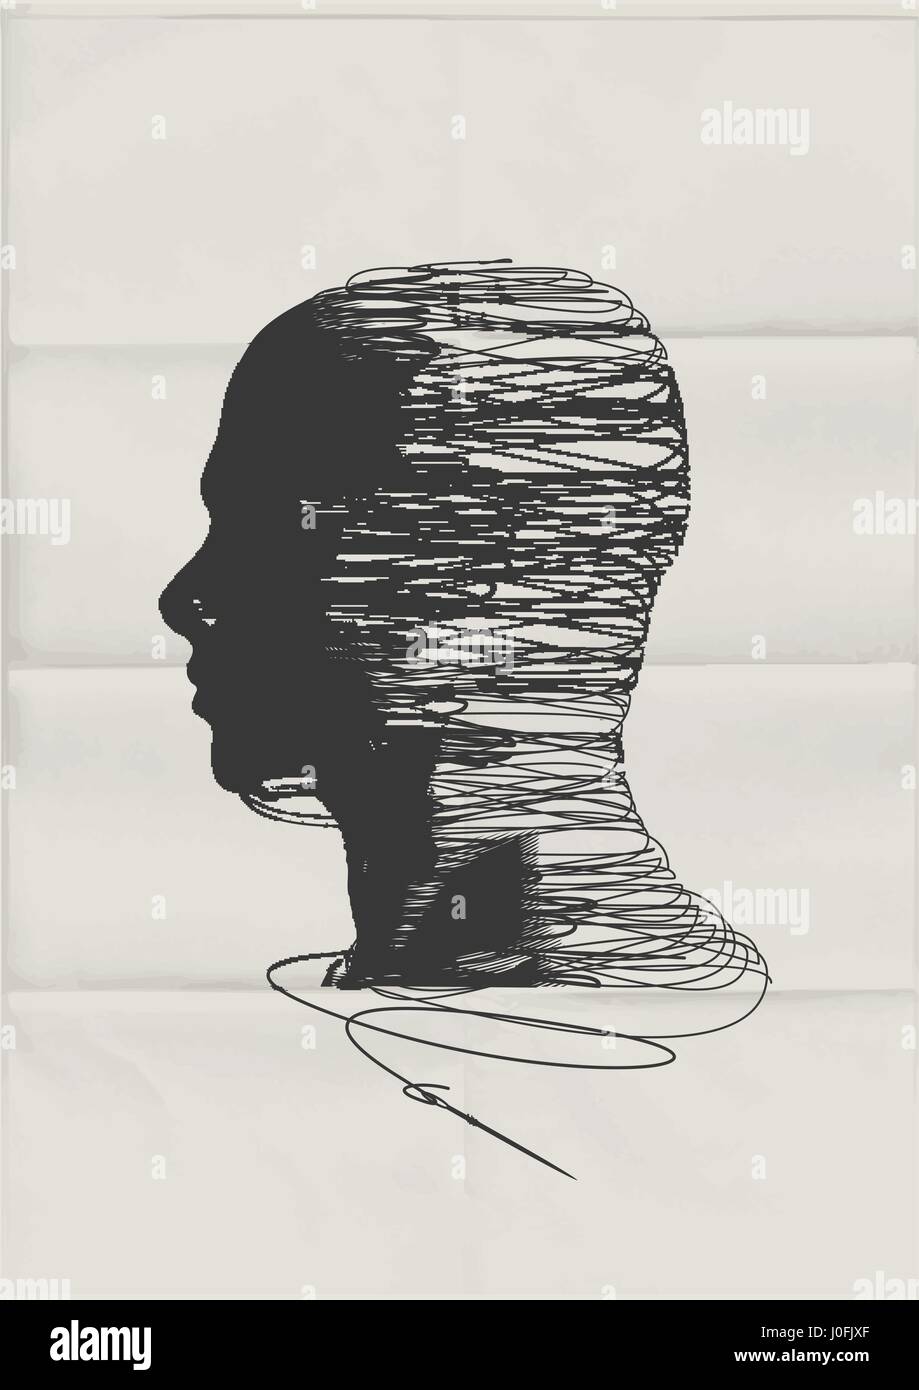 La mente umana. La forma della testa dell'uomo impigliato con filettature di stringa - Salute mentale concetto. Illustrazione Vettoriale